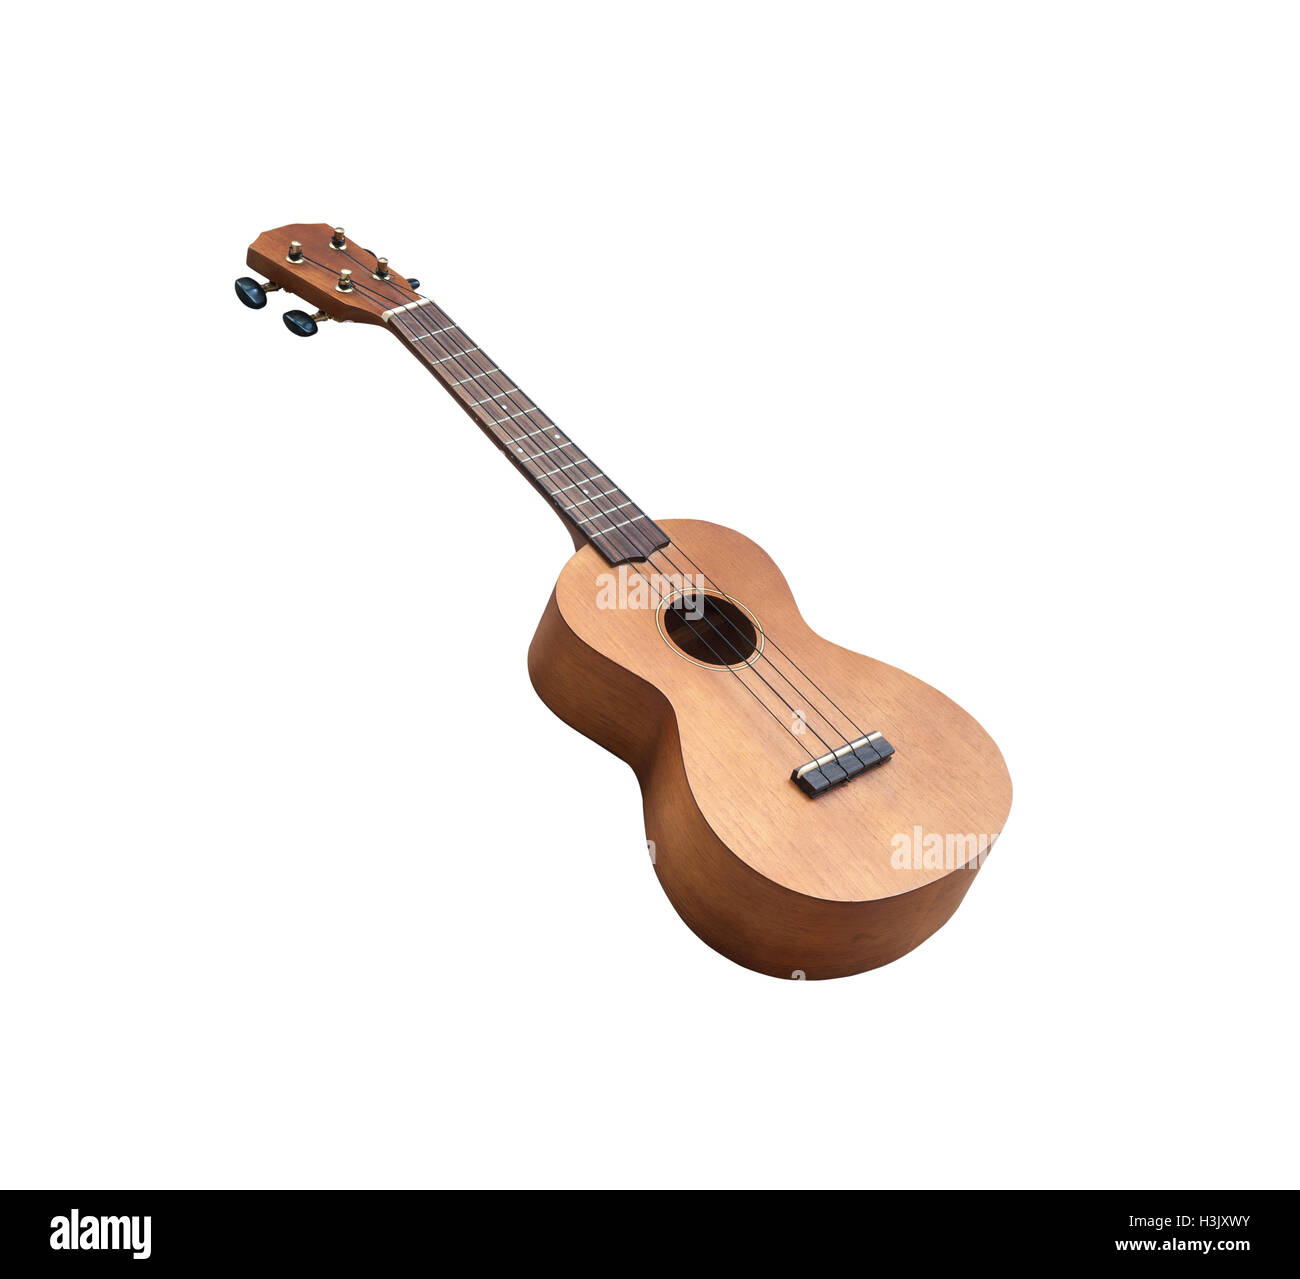 wood Ukulele guitar isolated Stock Photo